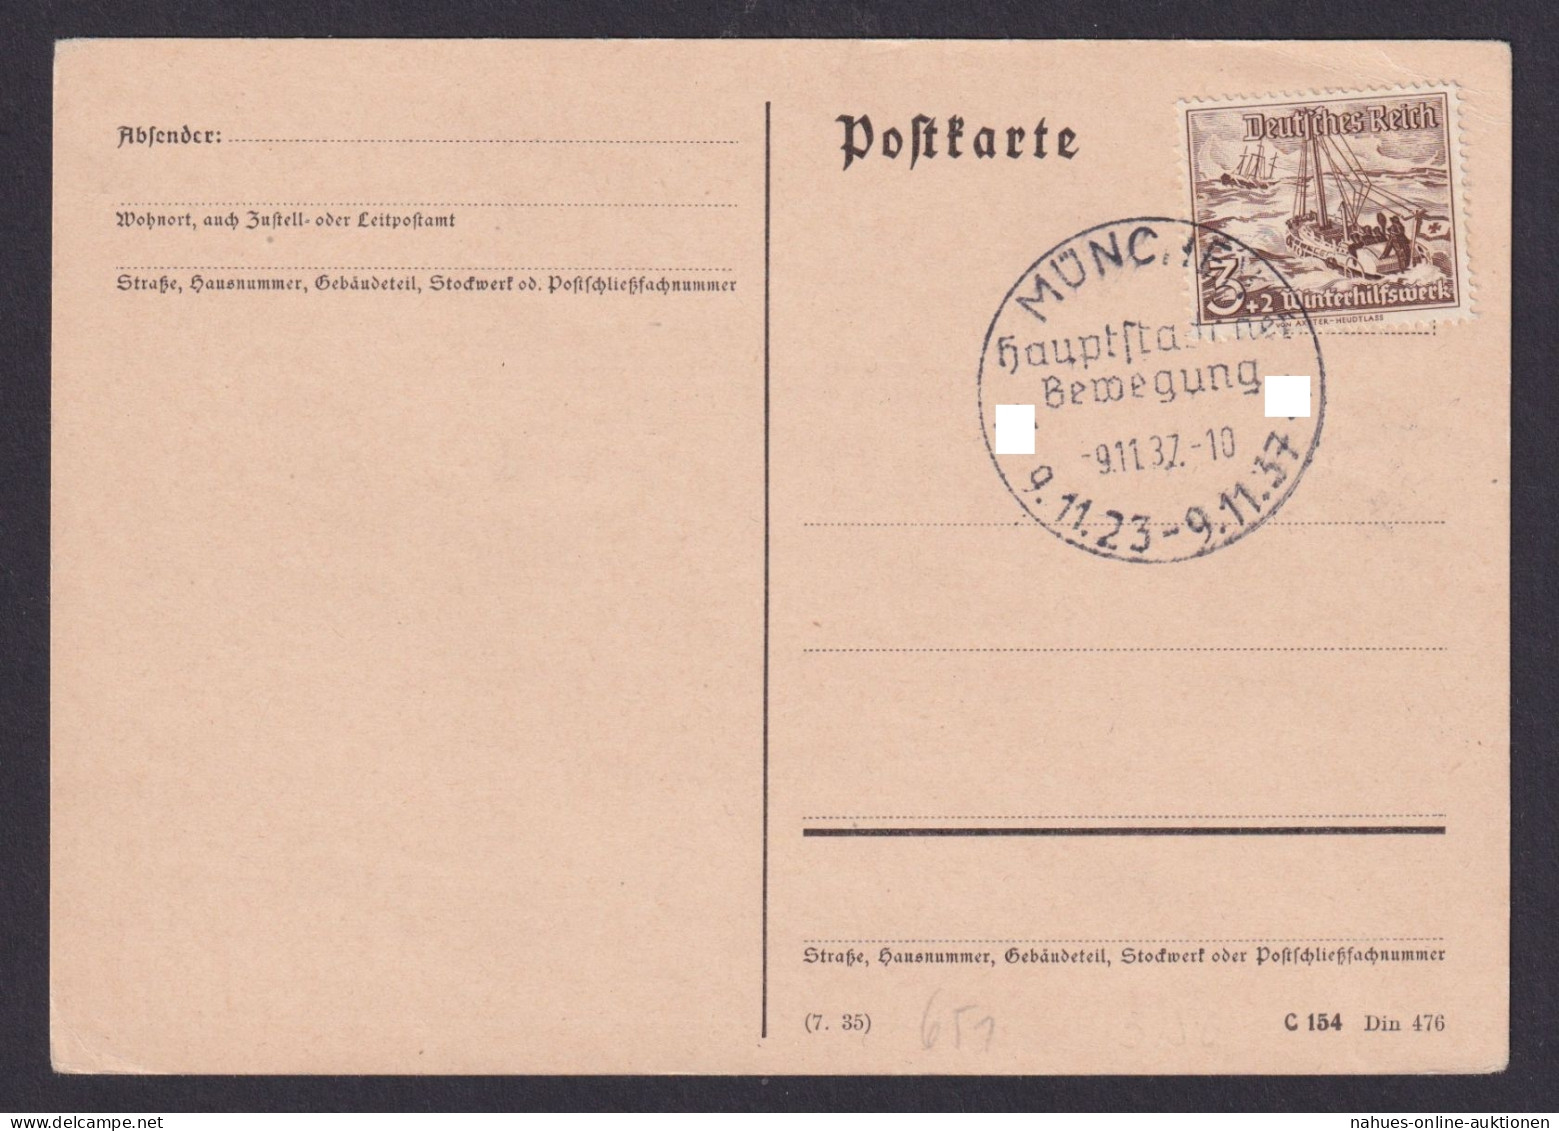 Deutsches Reich Postkarte München SST Hauptstadt D. Bewegung Ungelaufen - Briefe U. Dokumente